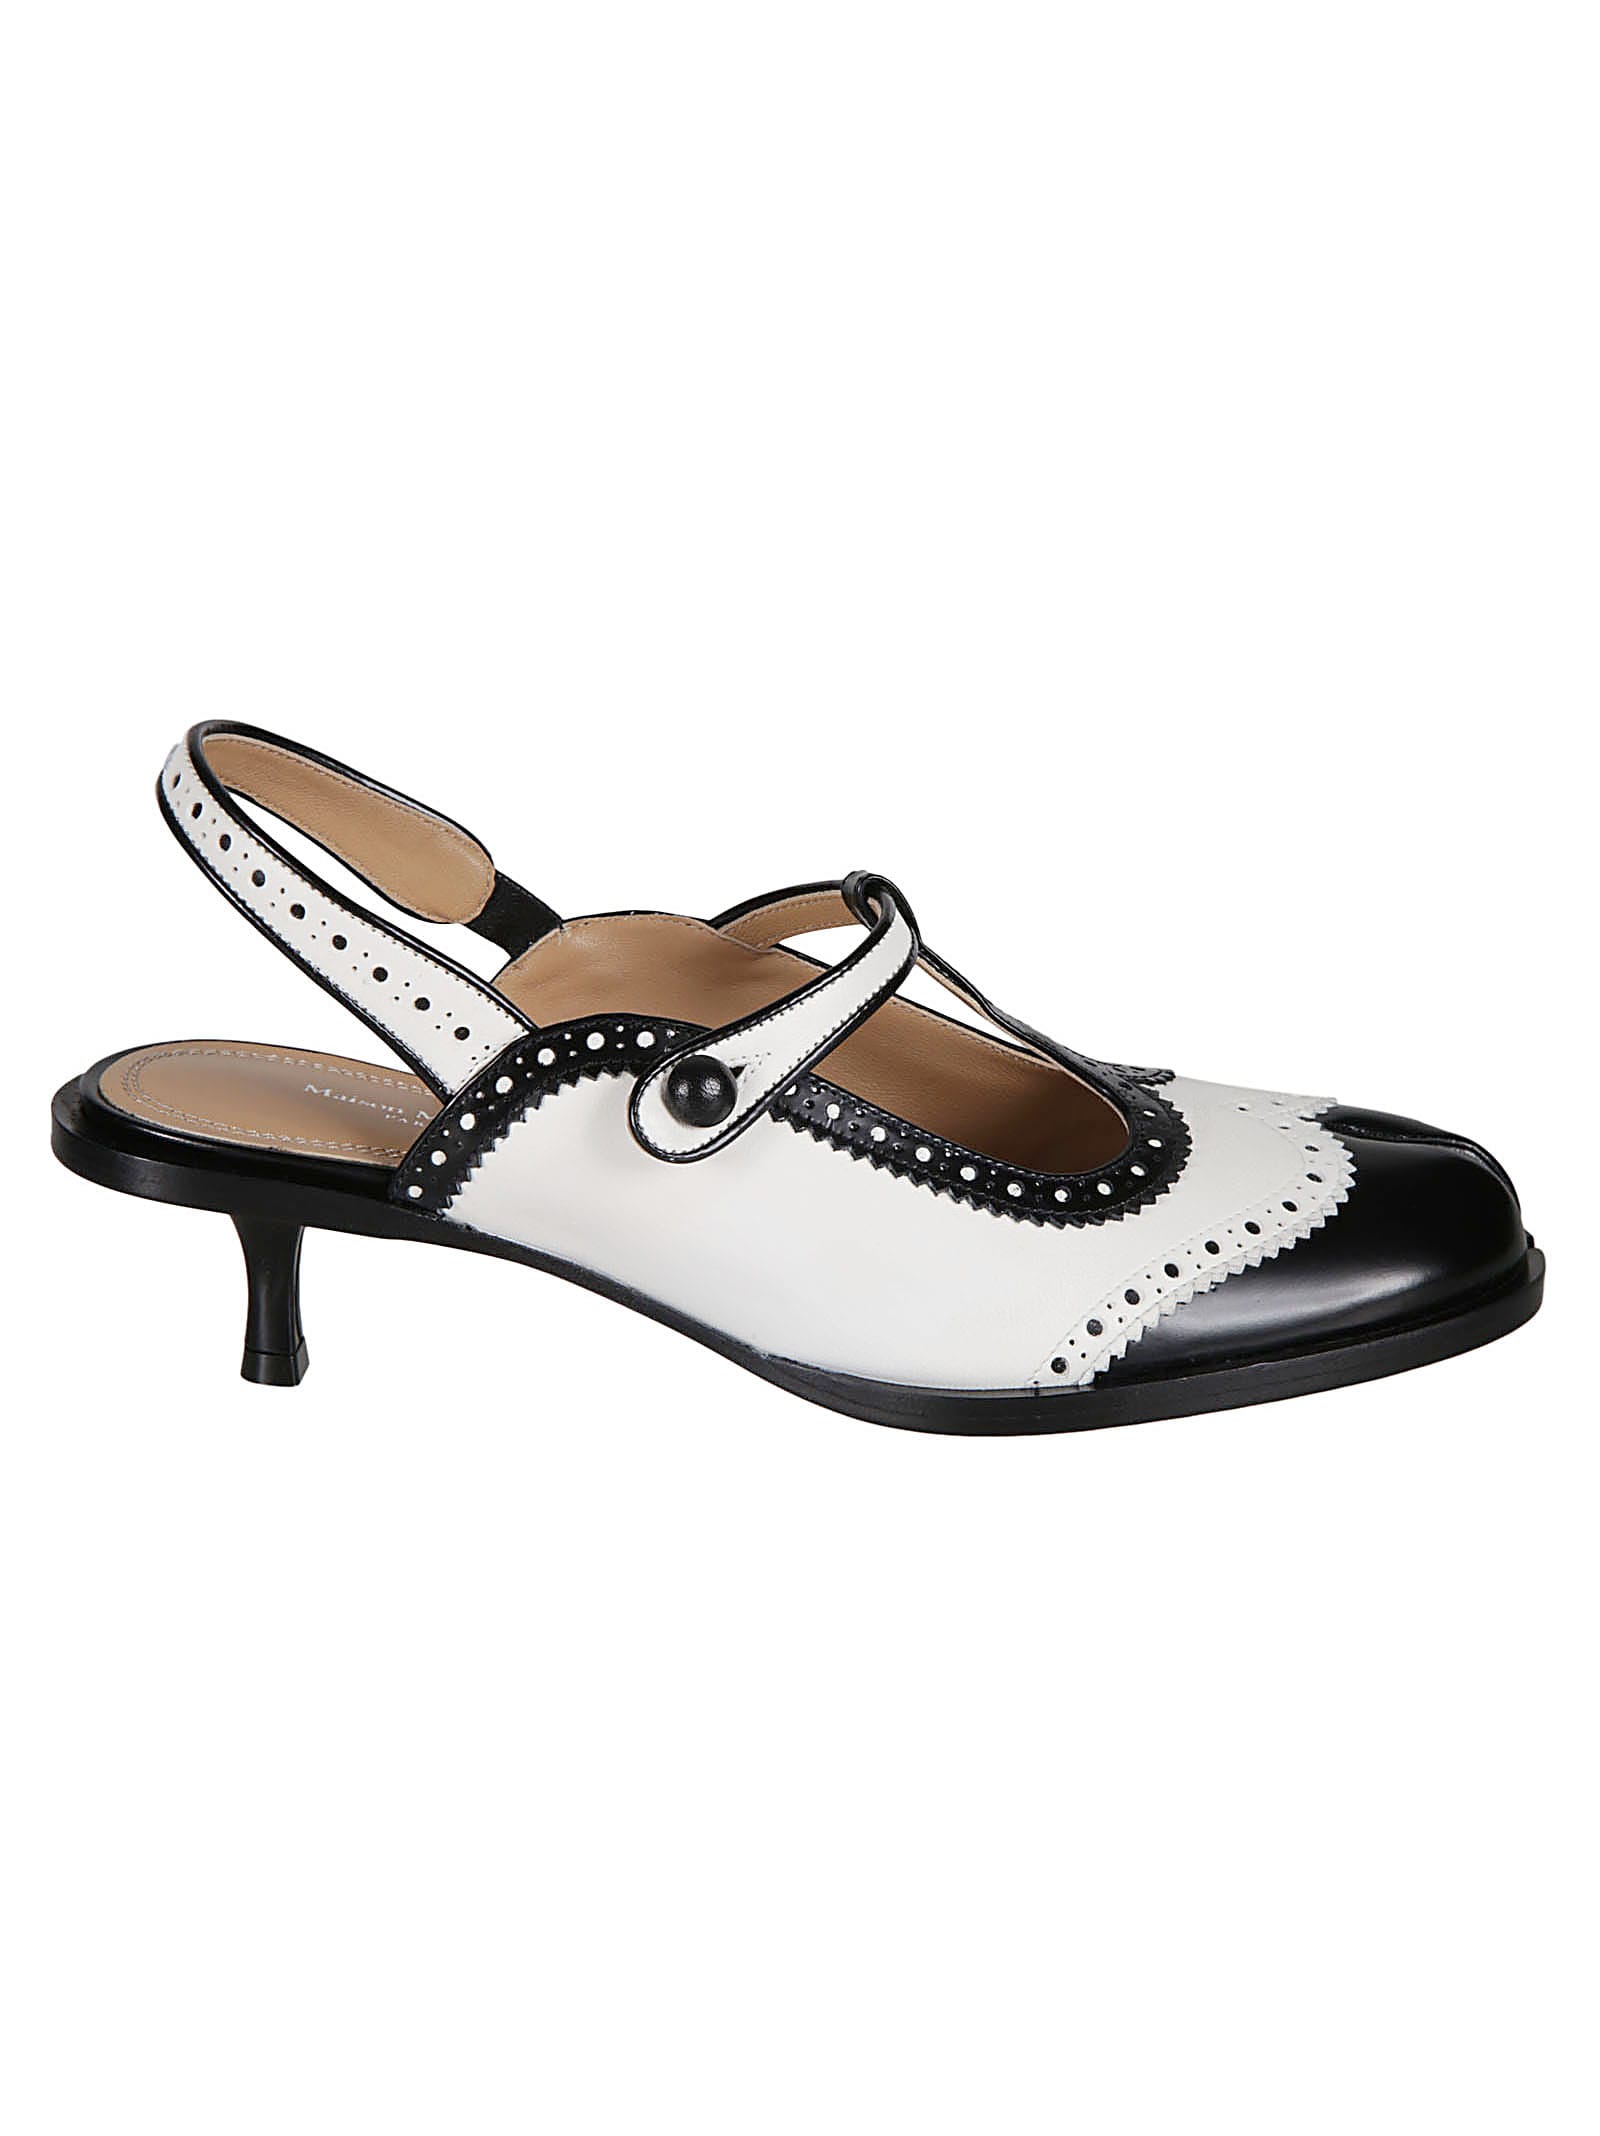 Shop Maison Margiela Bacl Strap Cleft Toe Sandals In Black/white